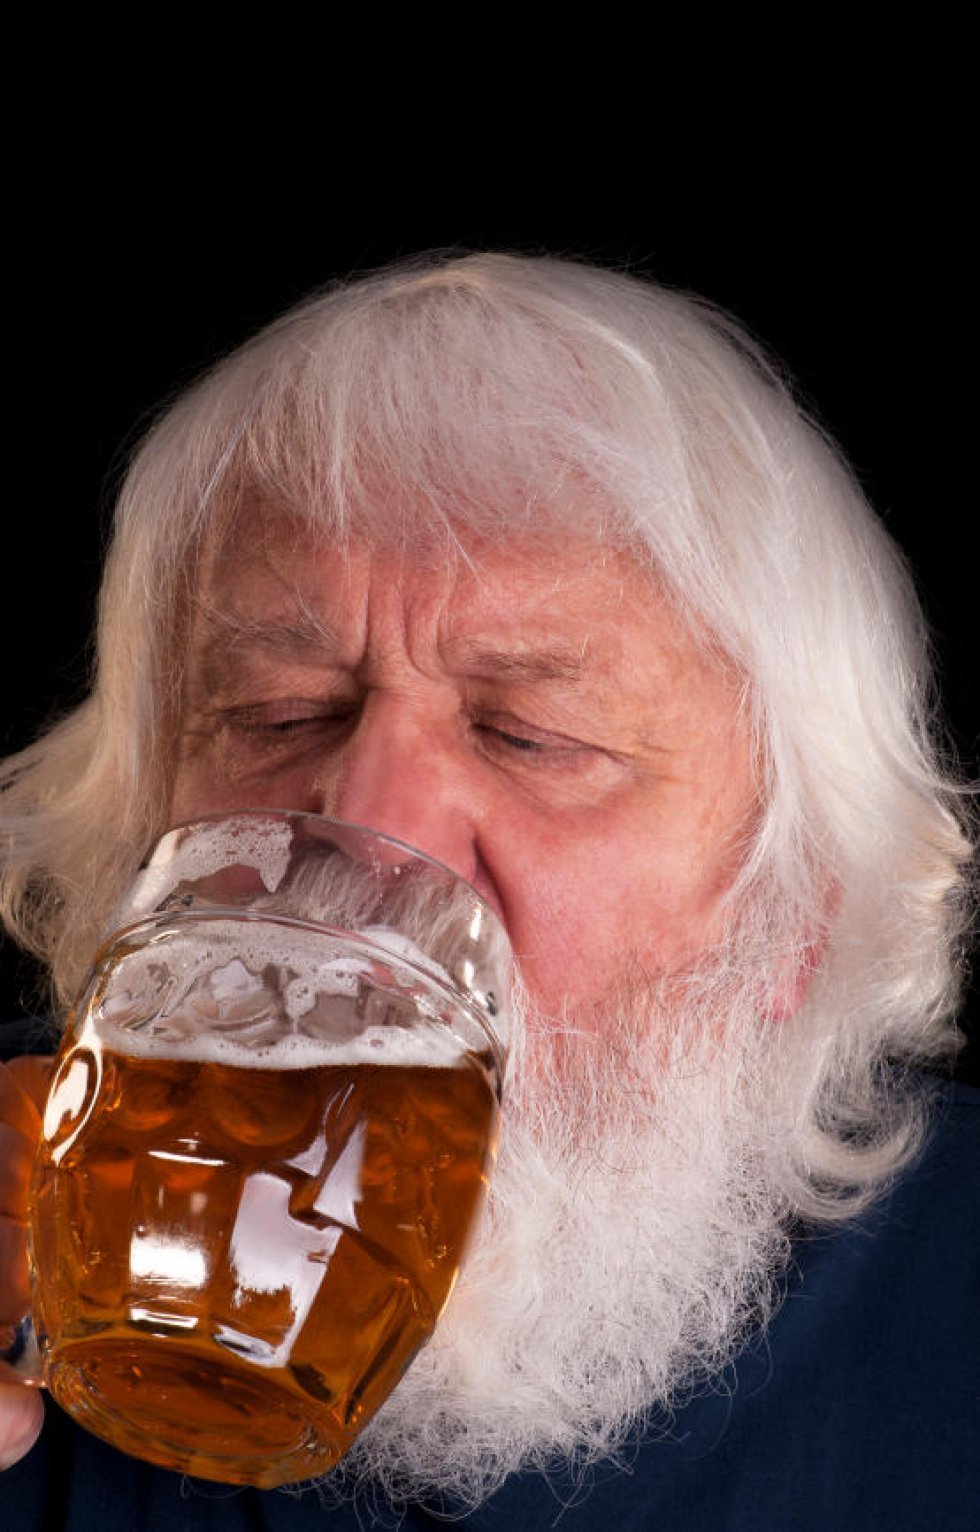 10 fantastiske facts om øl, du kan blære dig med i baren!